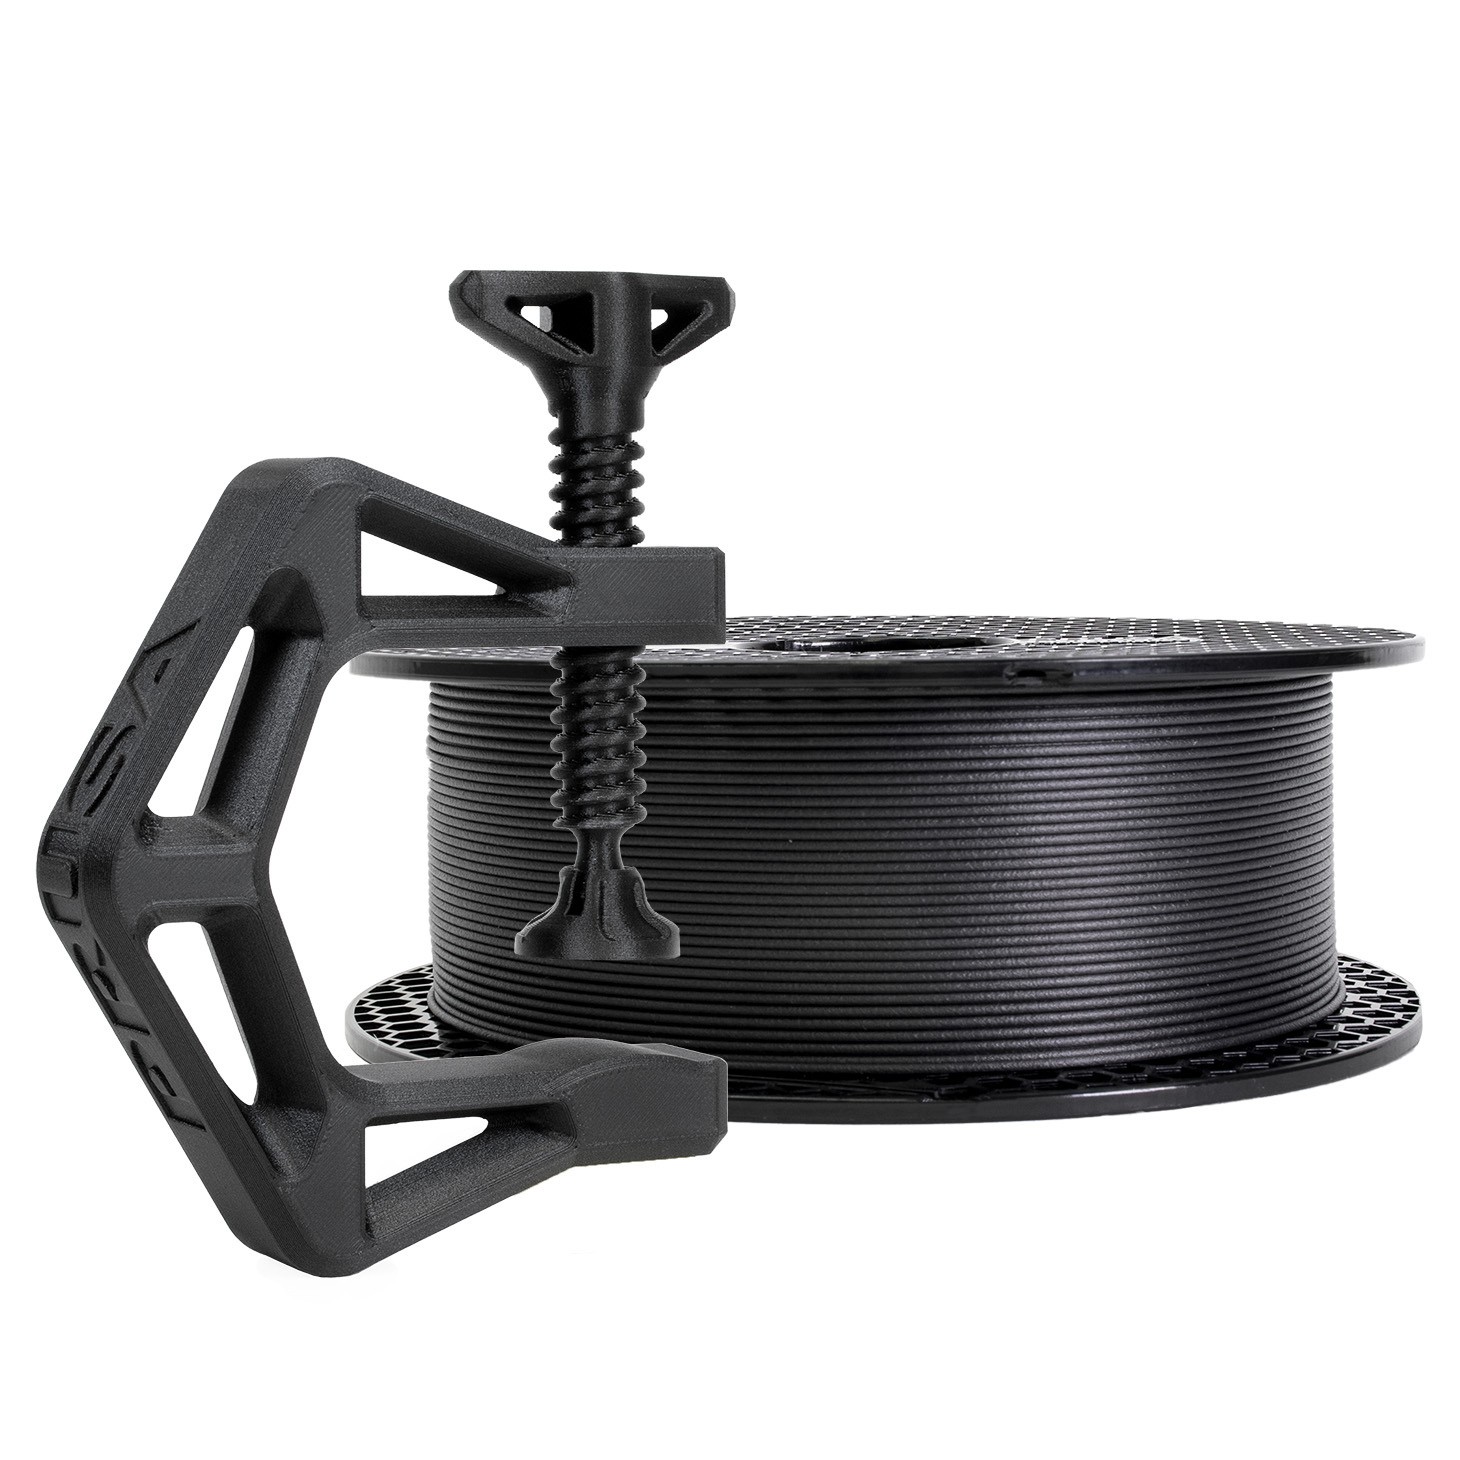 Prusament PETG Carbon Fiber Black 1kg  Stampanti 3D Original Prusa  direttamente da Josef Prusa